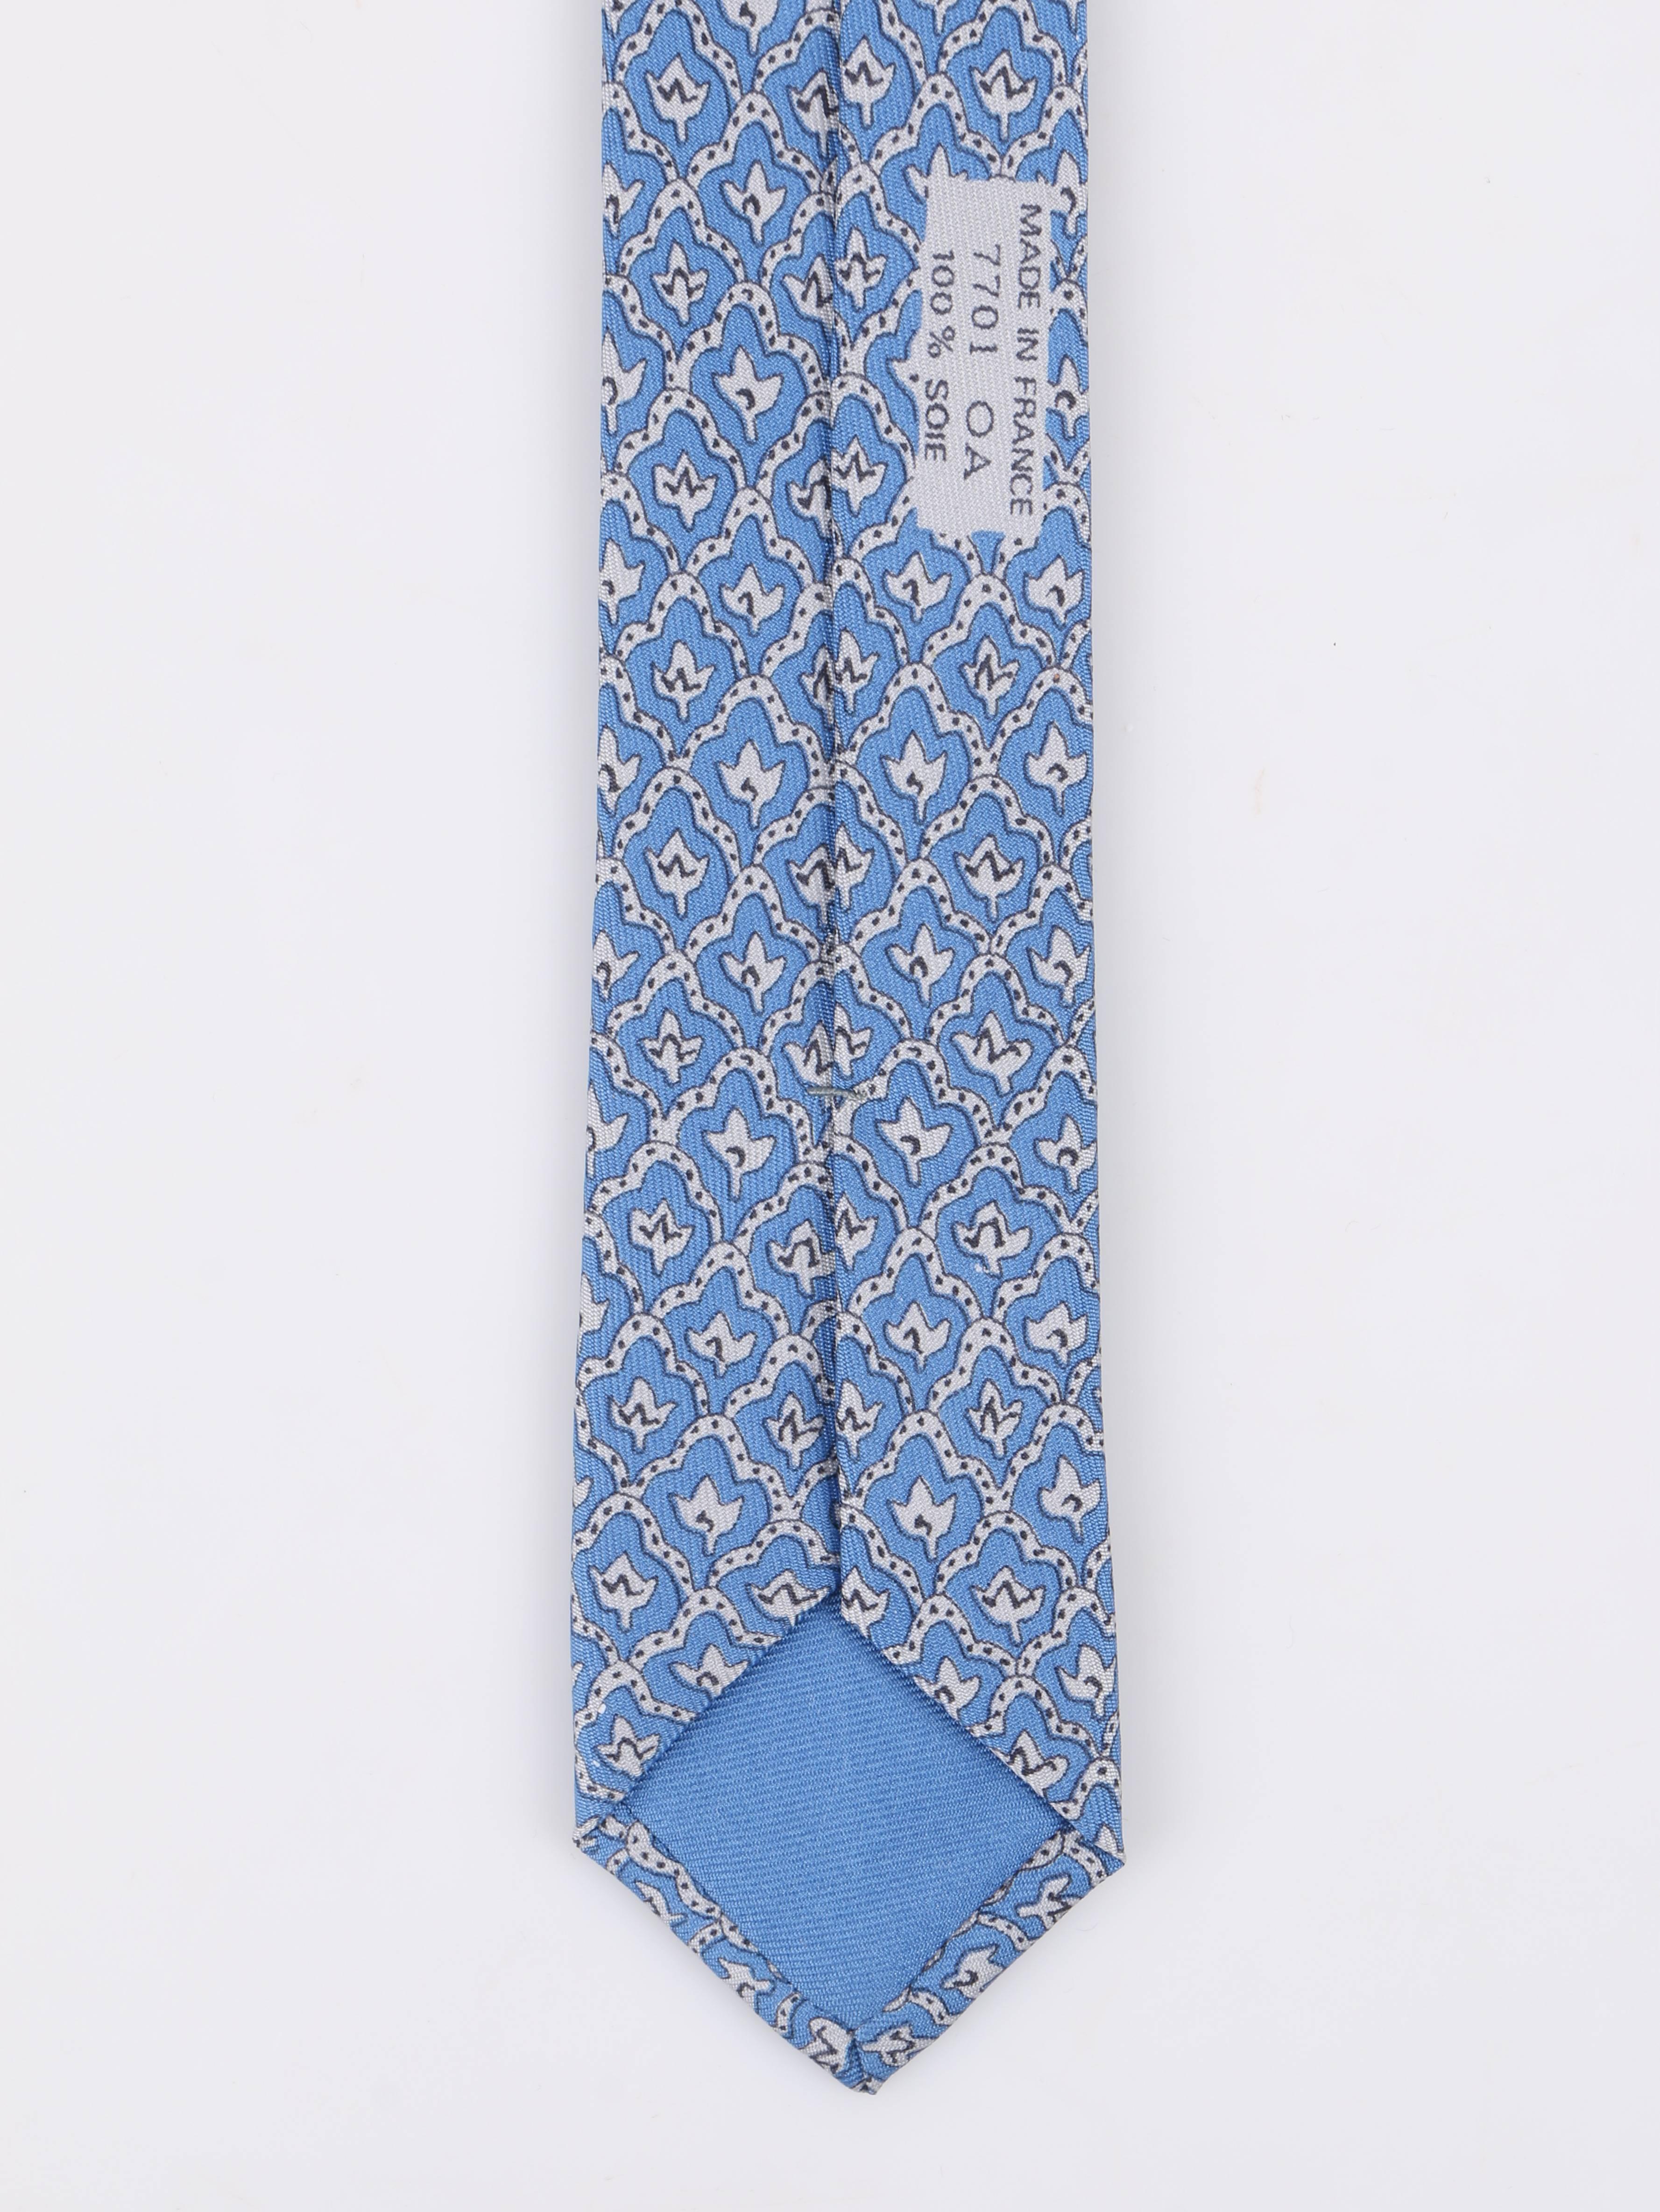 HERMES 5 Fold Cornflower Blue White Diamond Leaf Print Silk Necktie Tie 2